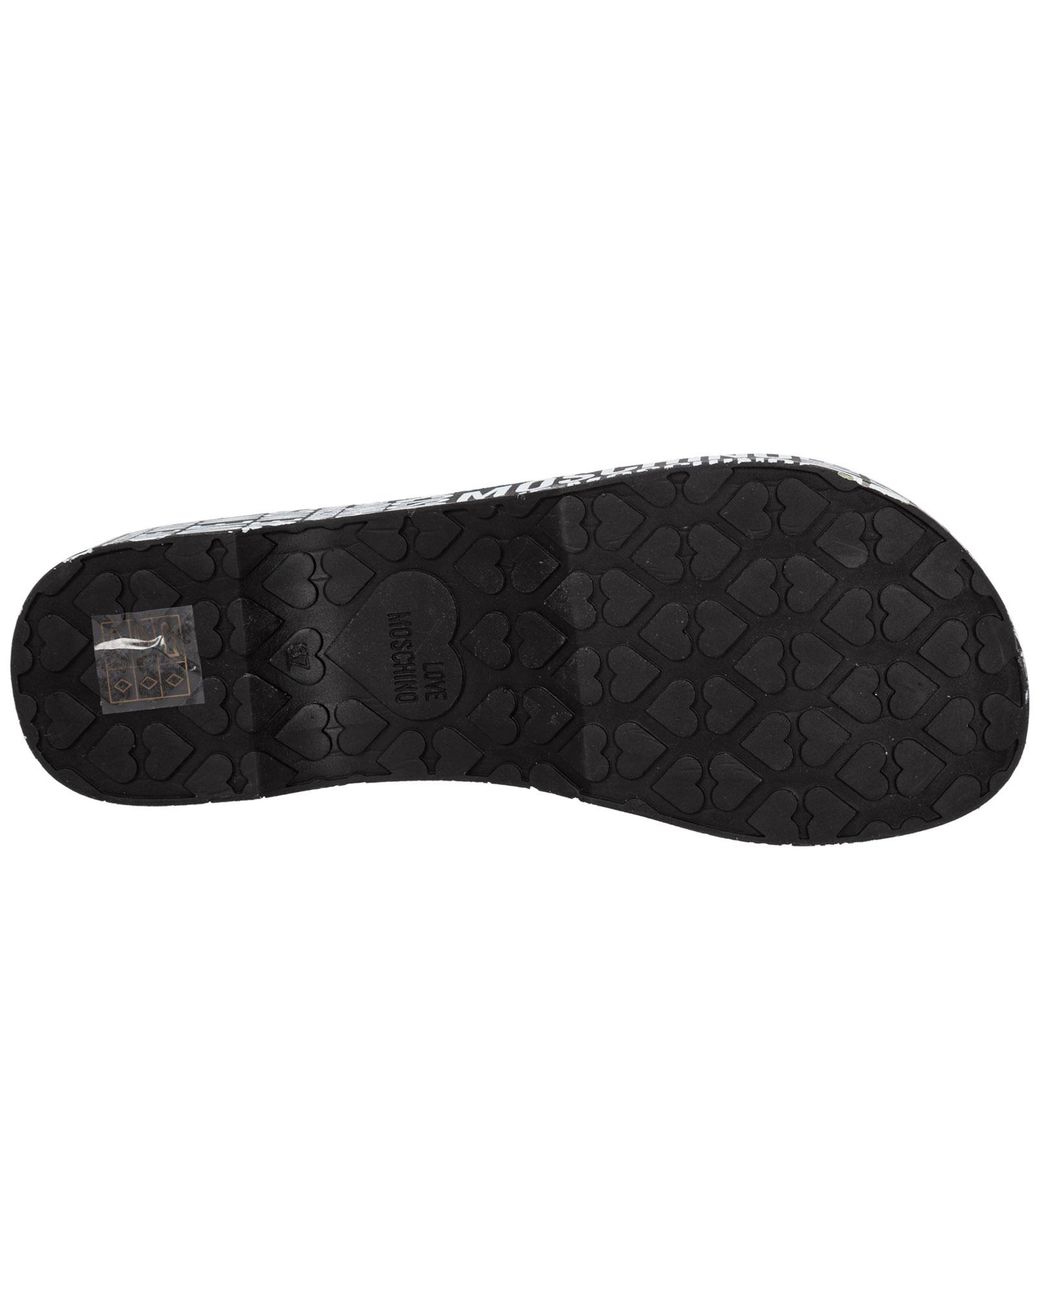 Love Moschino Flip Flops Sandals in Black | Lyst